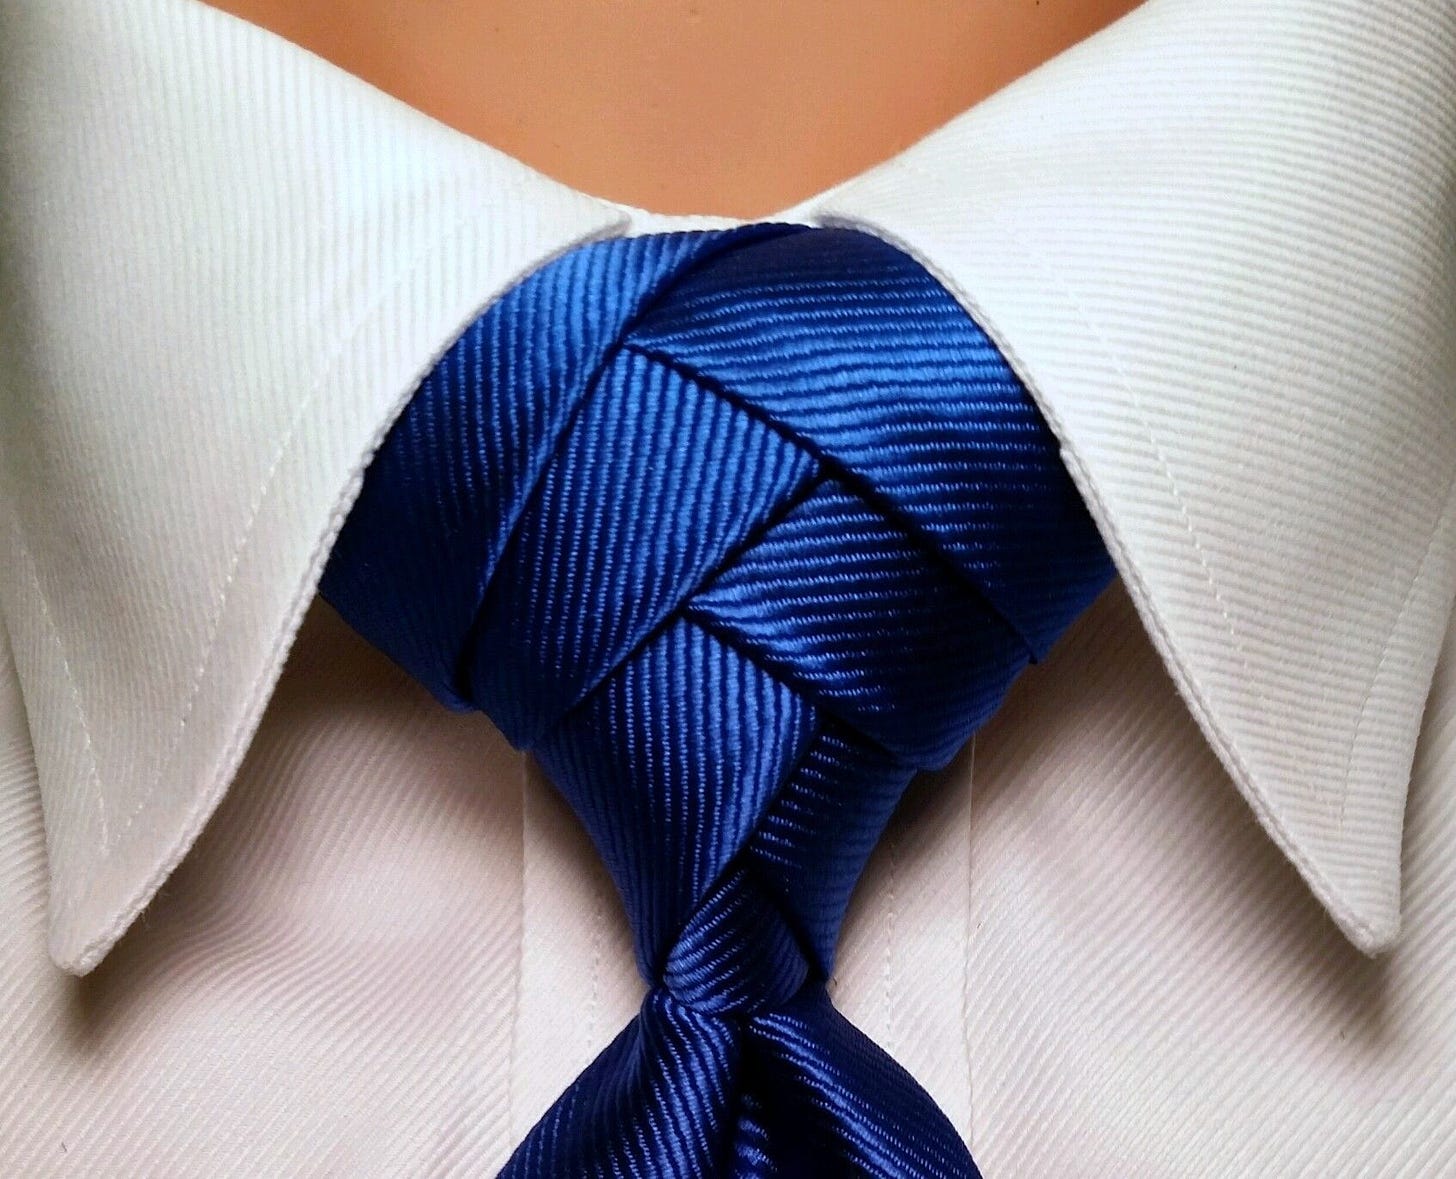 PLATINUM TRINITY | Neck tie knots, Tie knots, Cool tie knots